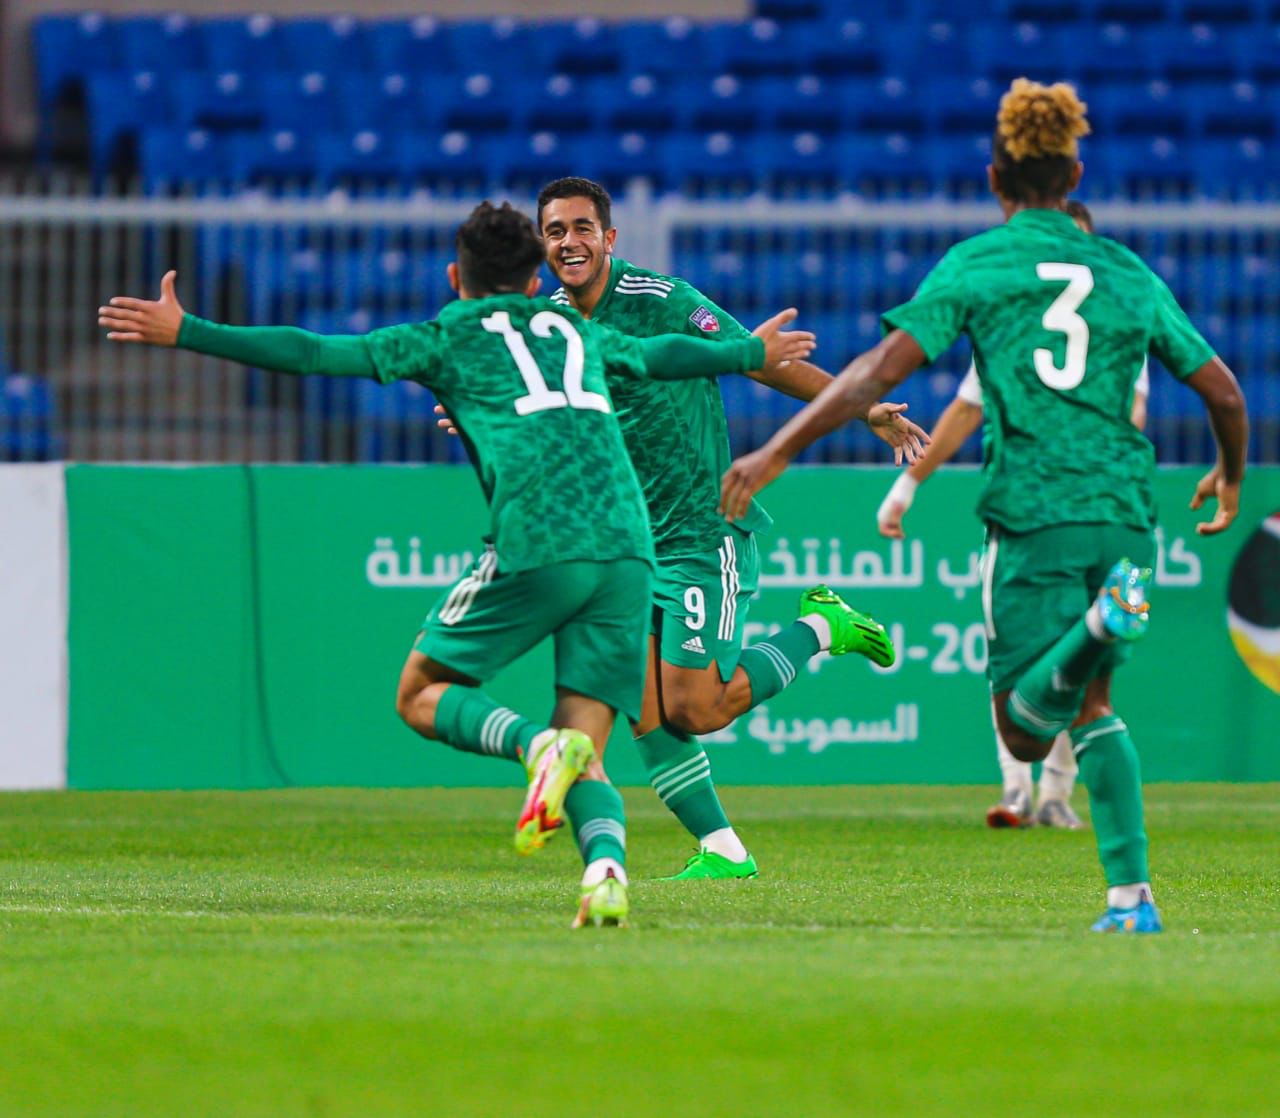 منتخب الجزائر يفوز على ليبيا ويتأهل إلى ربع النهائي